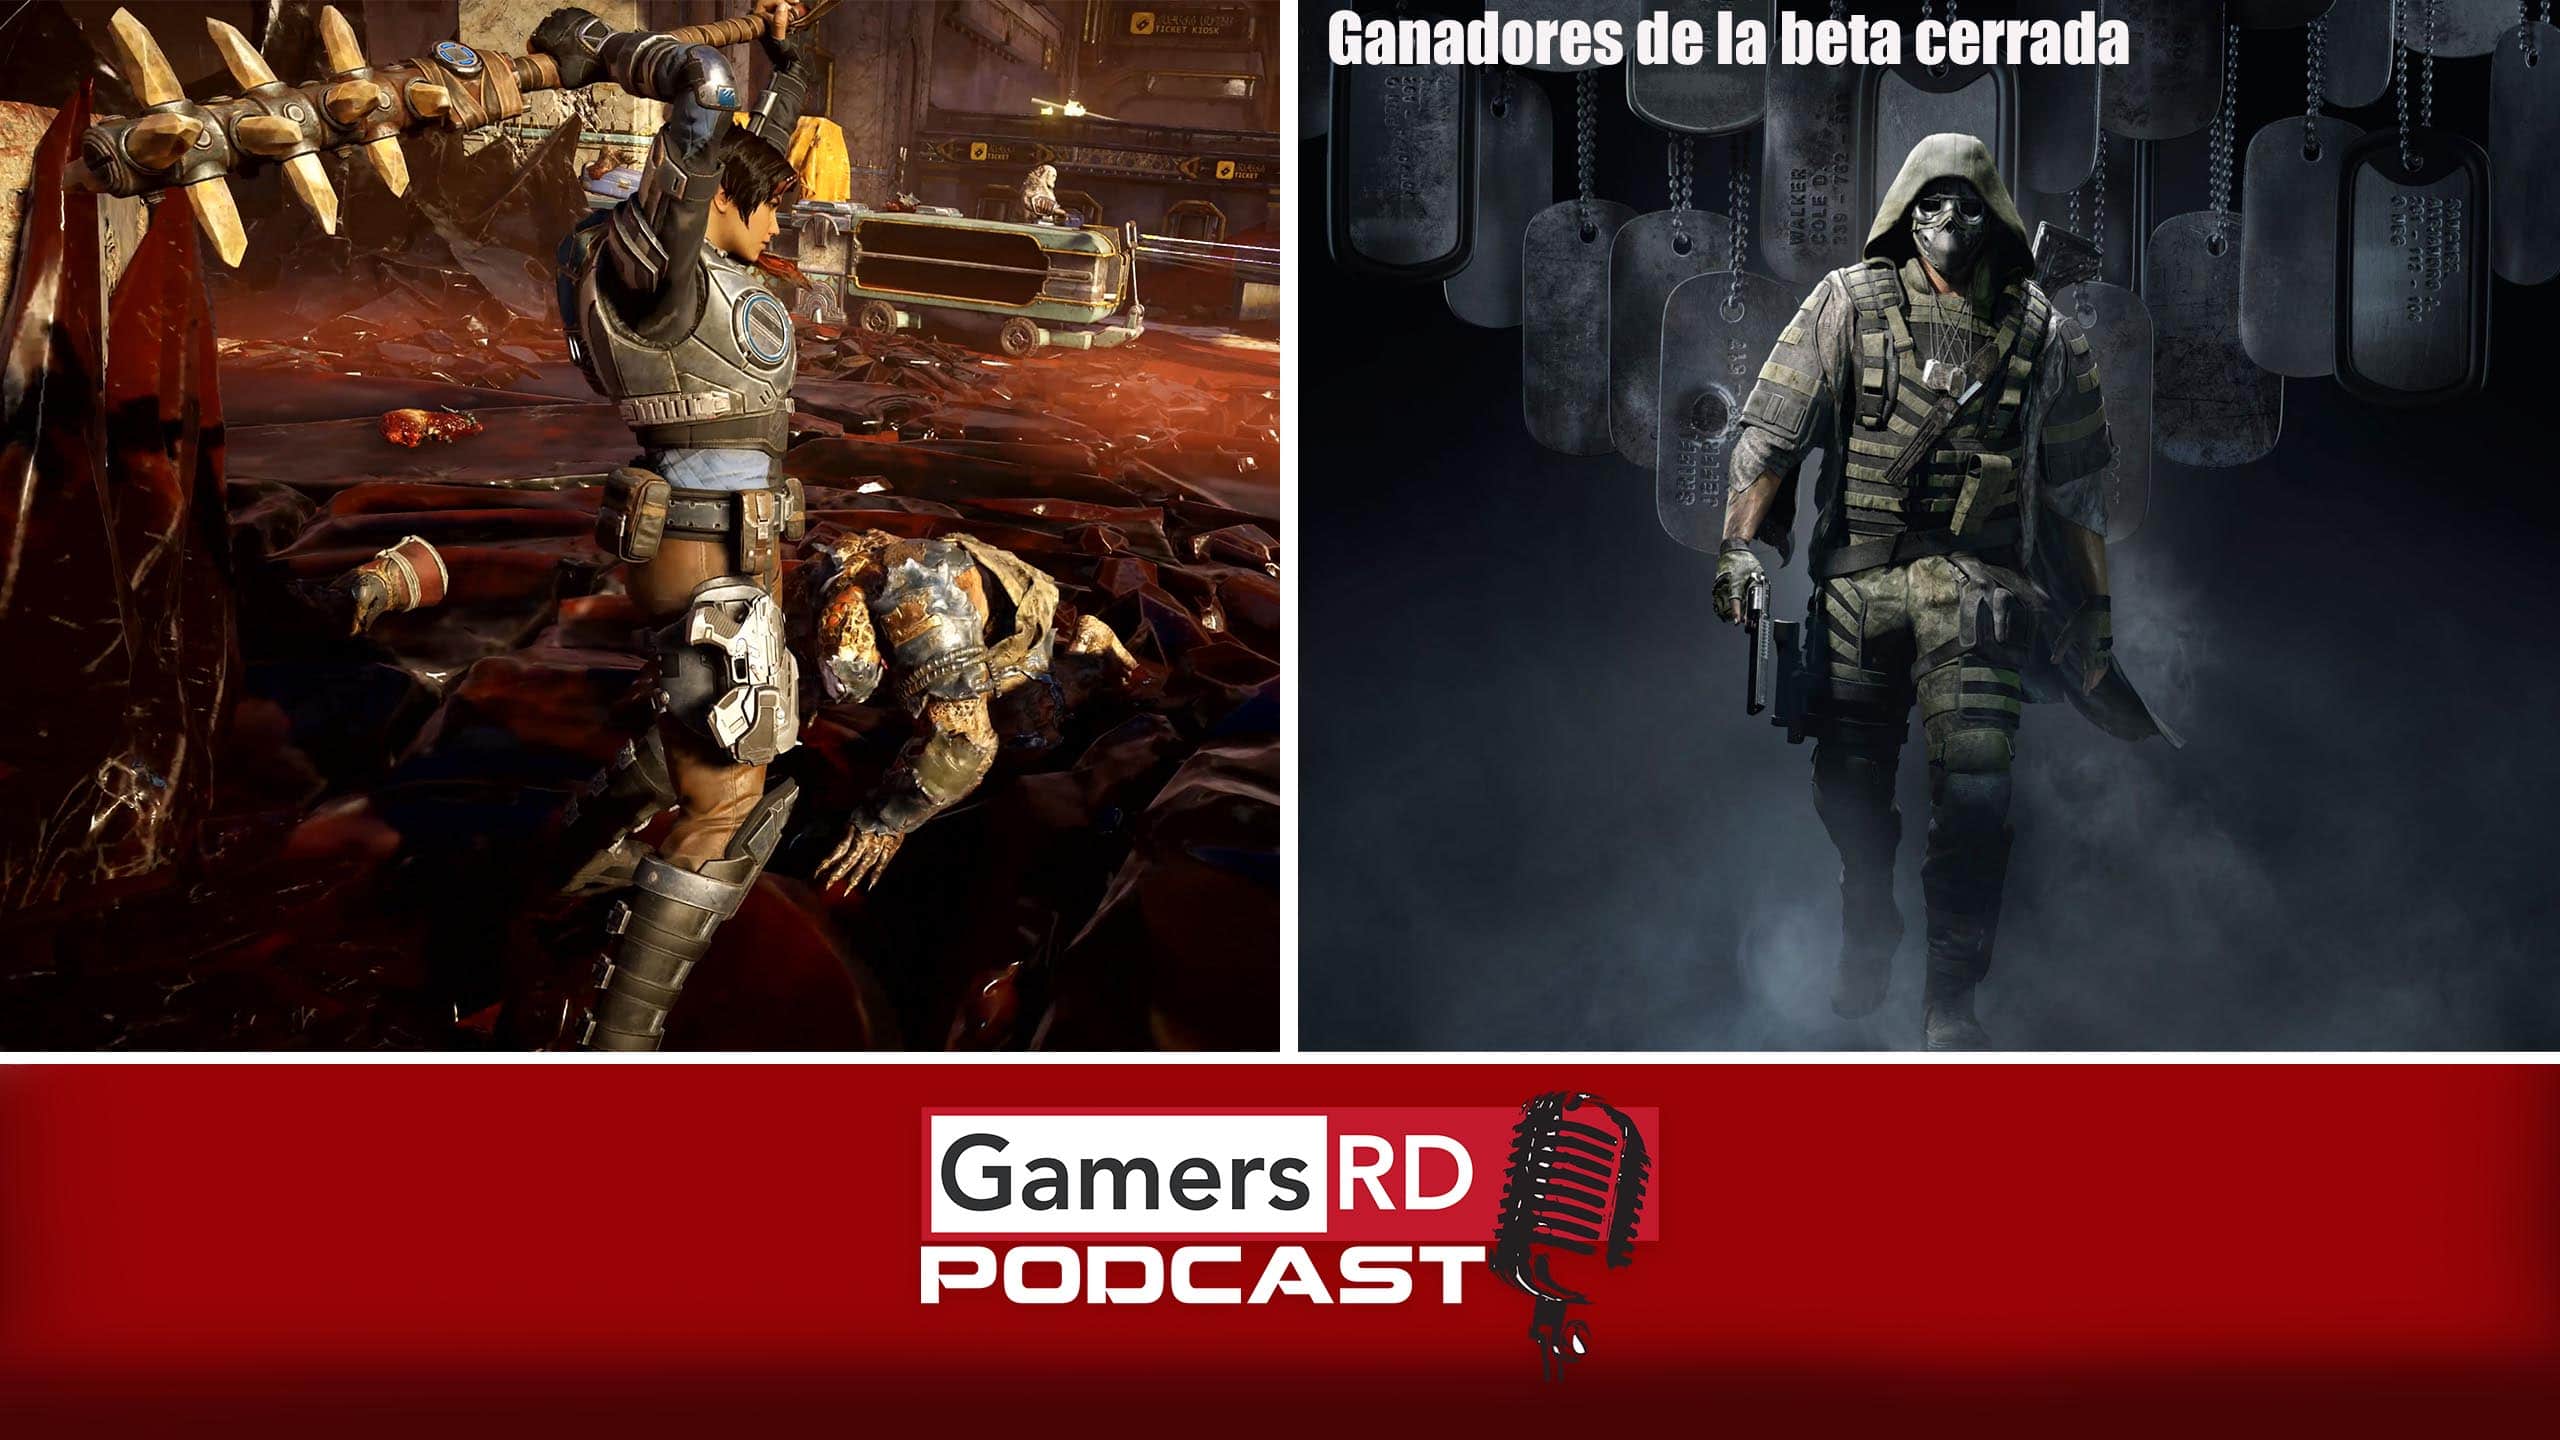 GamersRD Podcast #85, Gears 5 prueba tecnica, ganadores de beta cerrada ghost recon breakpoint